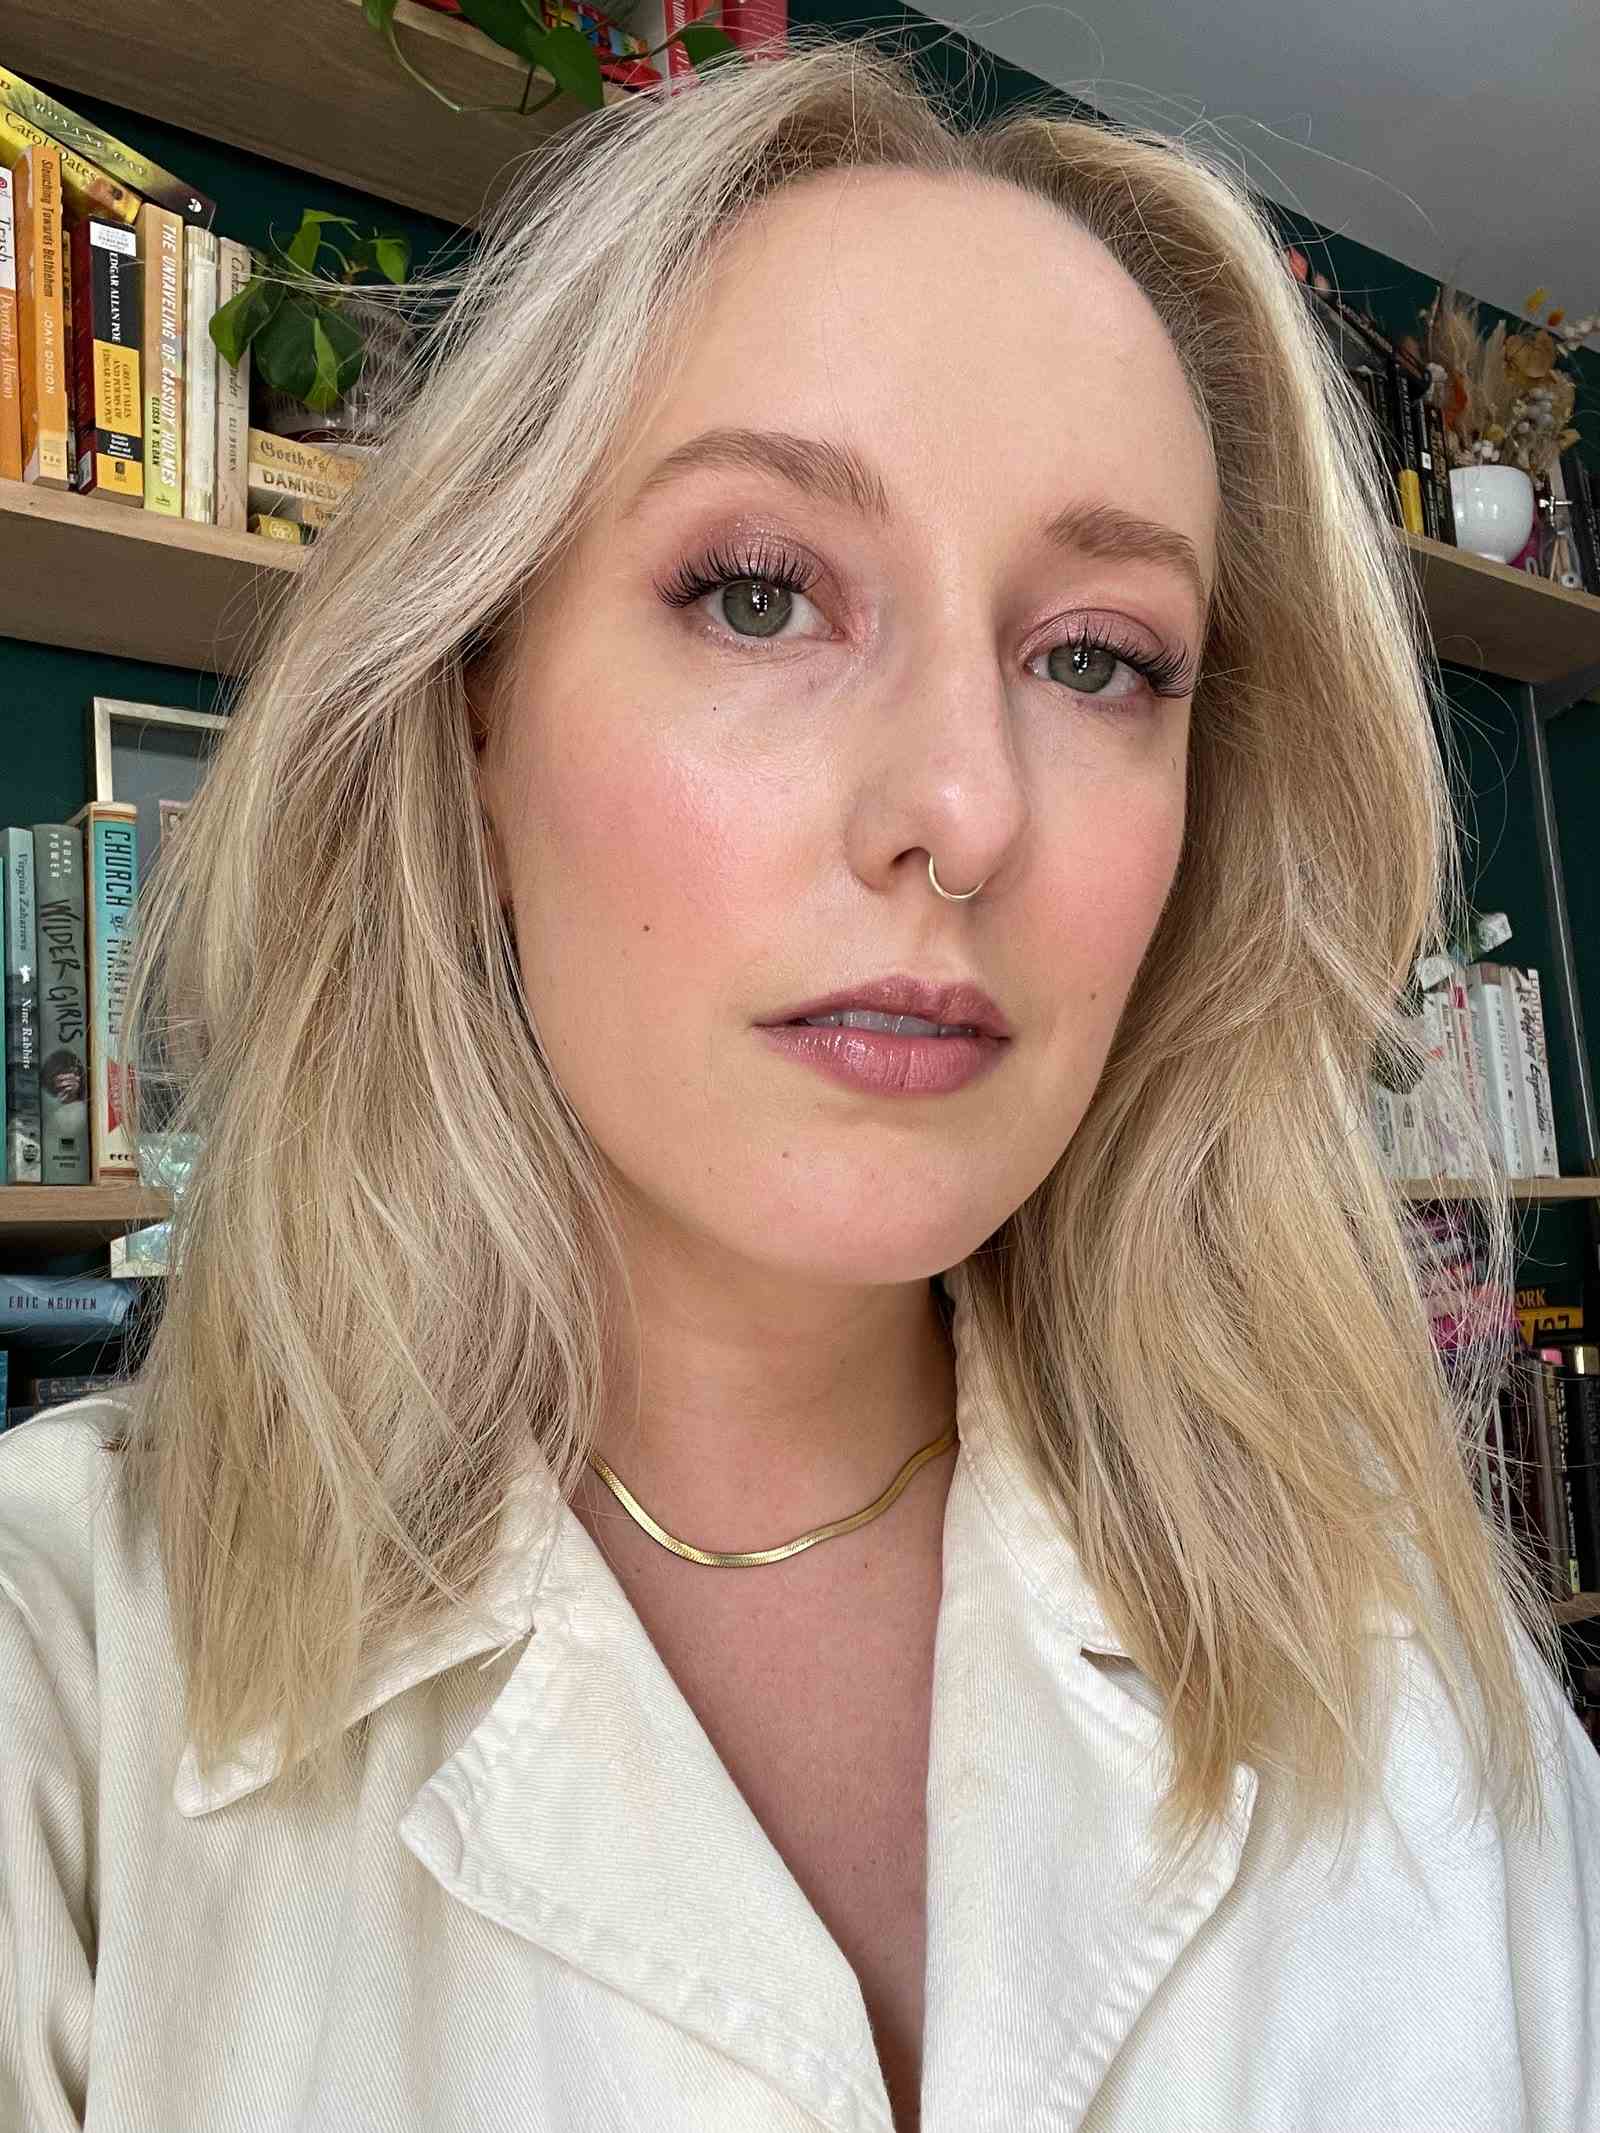 selfie von allure editor kara mcgrath mit fliederfarbenen st lash extensions, malvenfarbenem lidschatten und einem weißen top